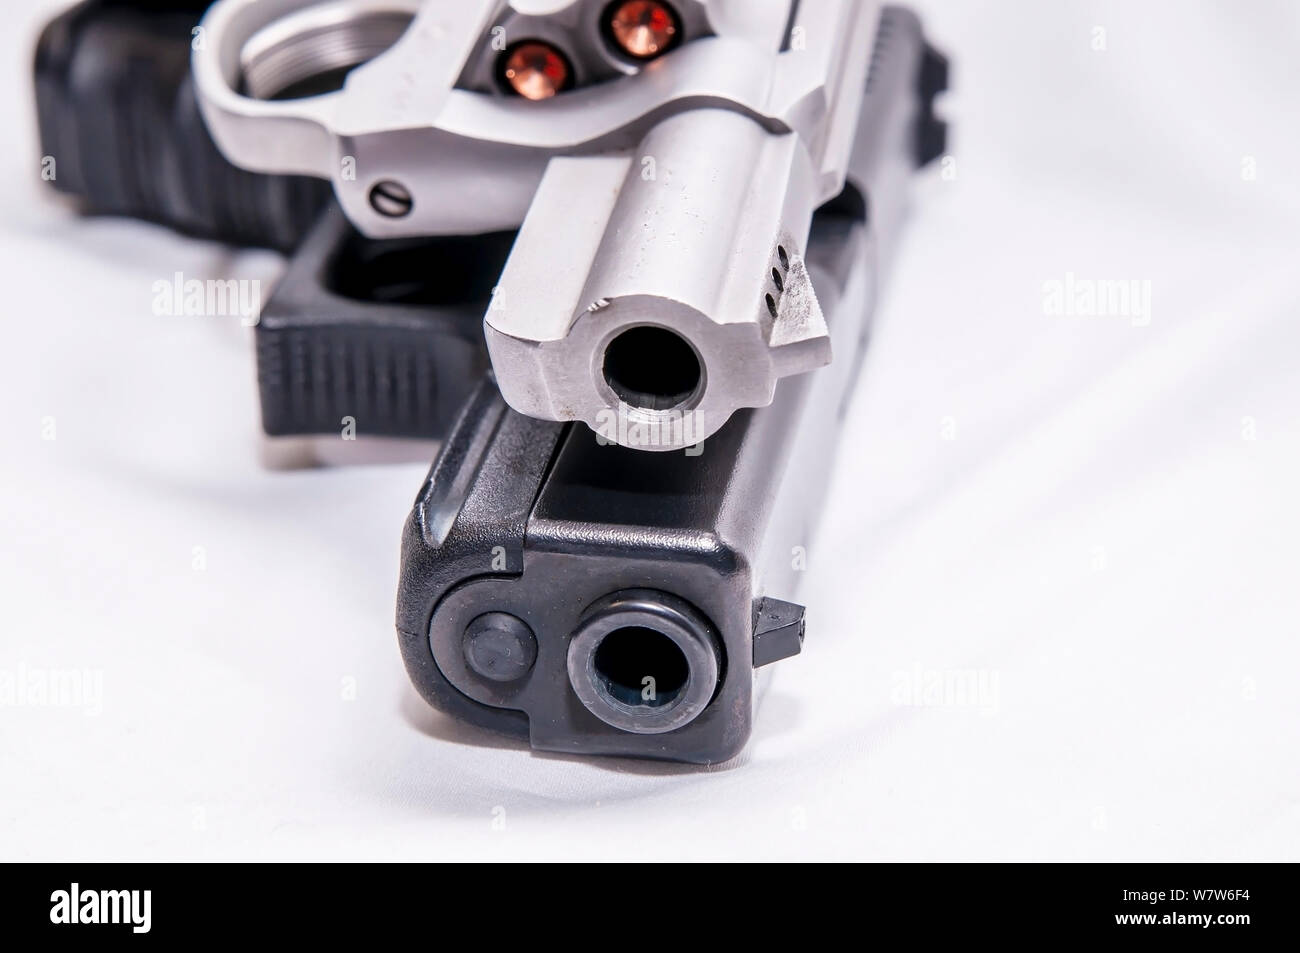 Due pistole, un argento dal naso camuso 357 revolver Magnum e un nero 9mm pistola su sfondo bianco Foto Stock